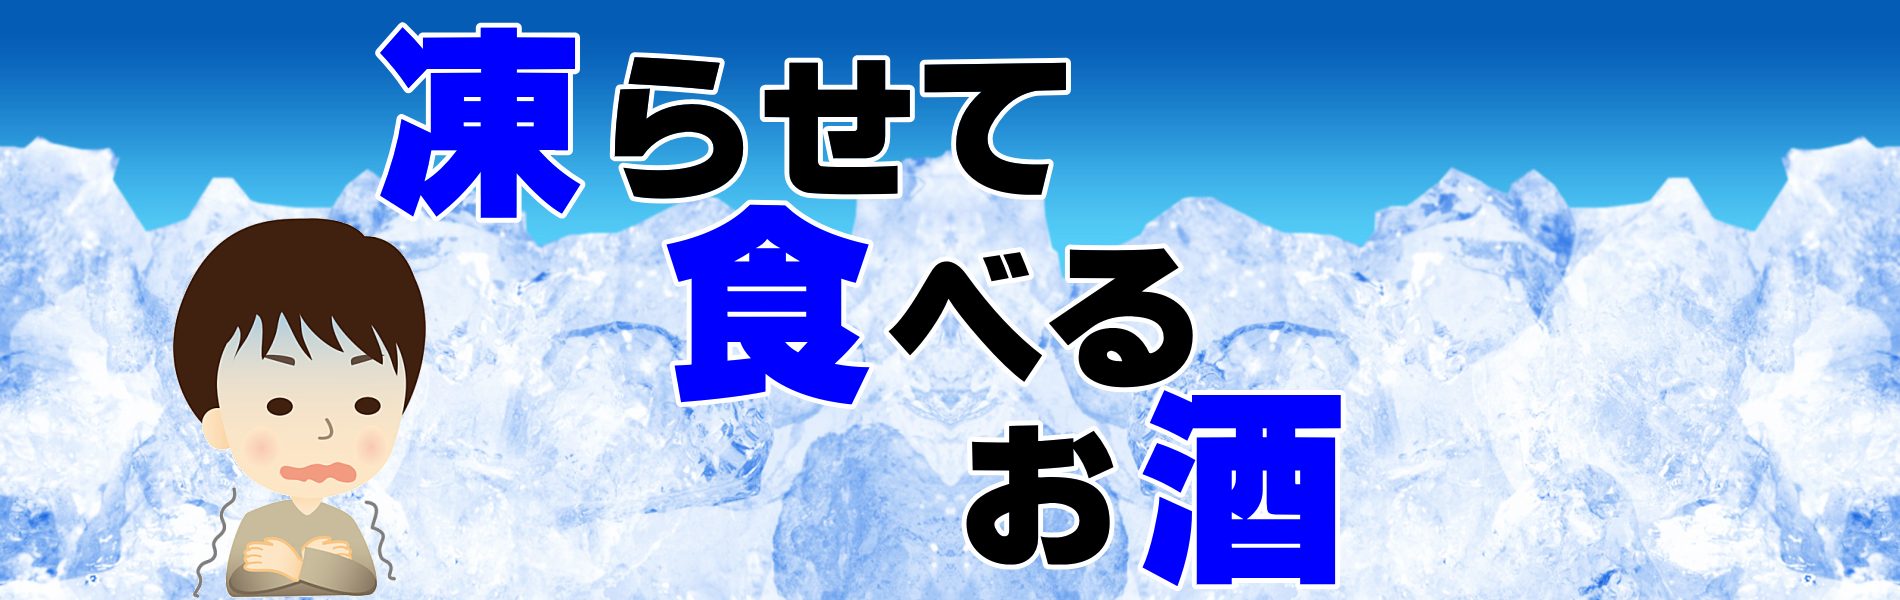 凍らせて食べる日本酒 飛良泉 氷結生酒